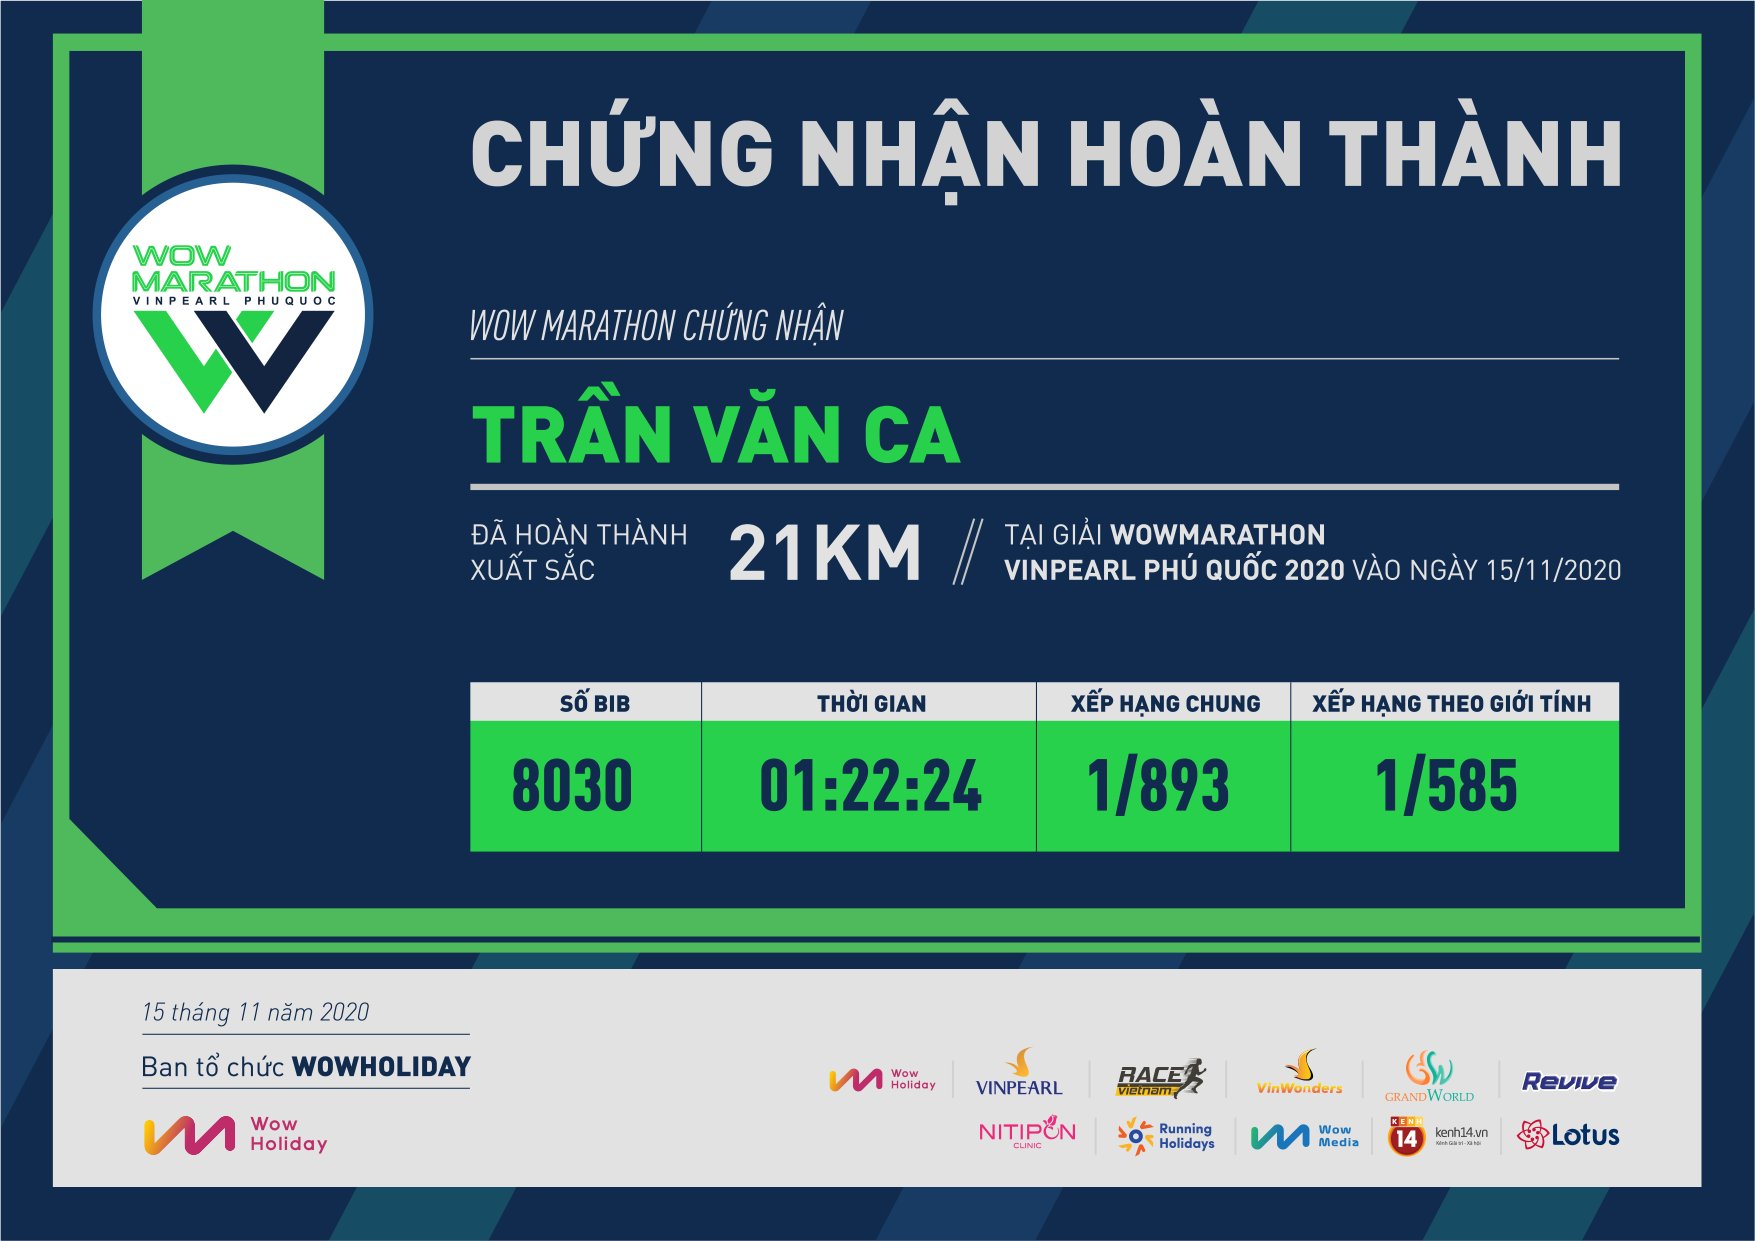 8030 - Trần Văn Ca